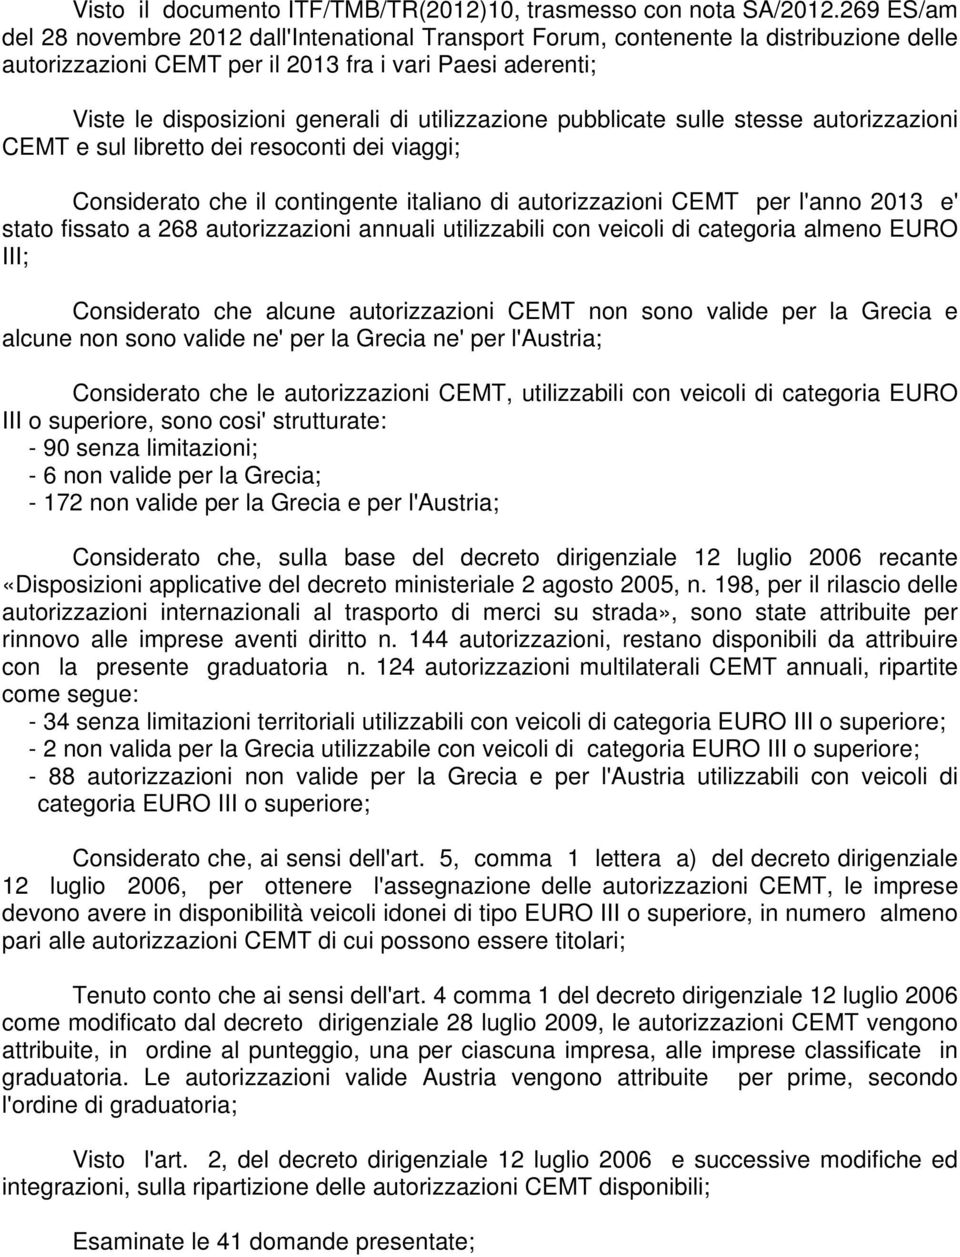 utilizzazione pubblicate sulle stesse autorizzazioni CEMT e sul libretto dei resoconti dei viaggi; Considerato che il contingente italiano di autorizzazioni CEMT per l'anno 2013 e' stato fissato a